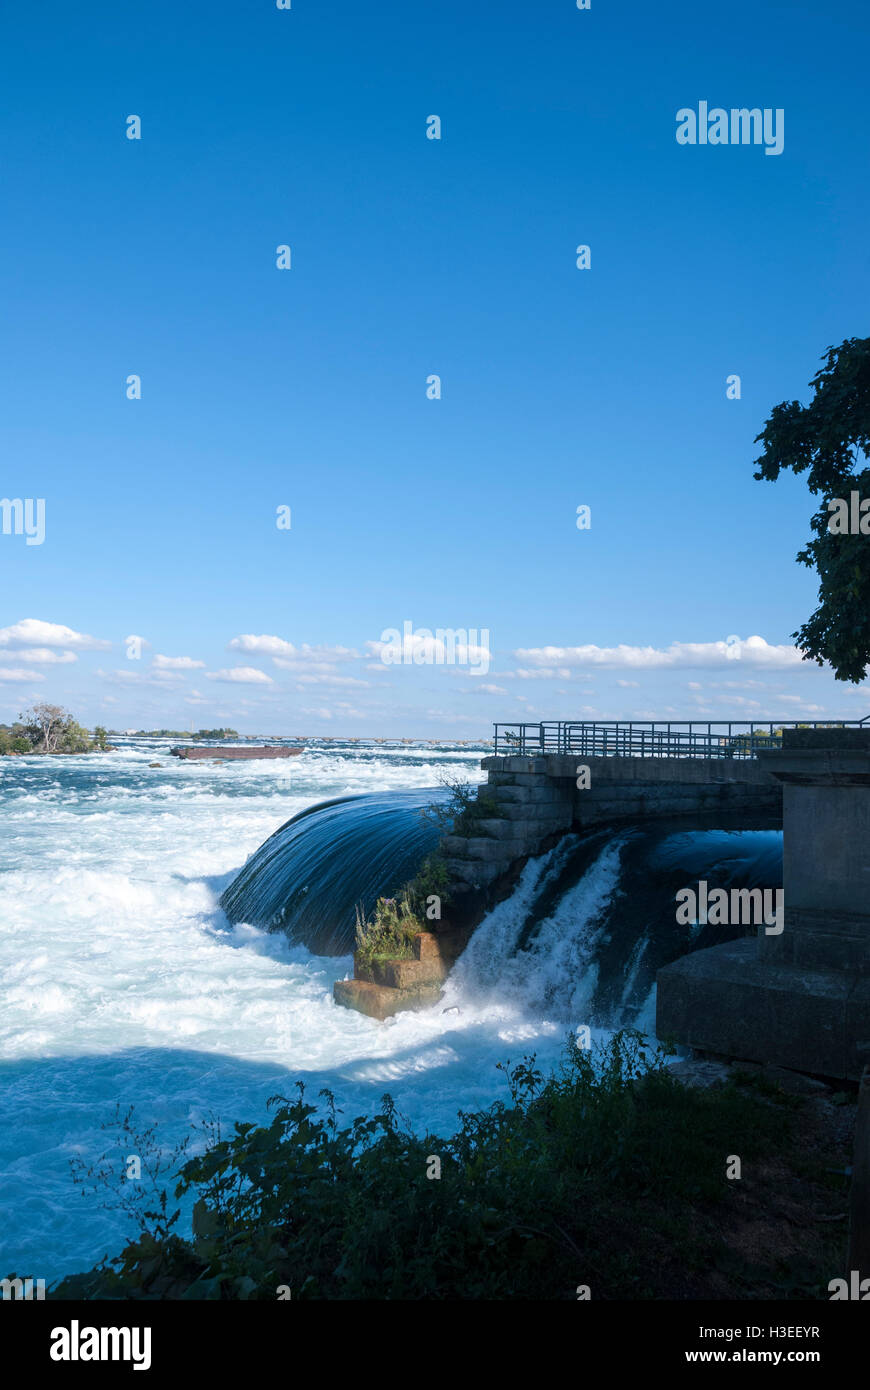 L'eau évacuée d'une centrale électrique désaffectée avec l'épave de la célèbre barge historique de Niagara s'est échouée en arrière-plan. Banque D'Images